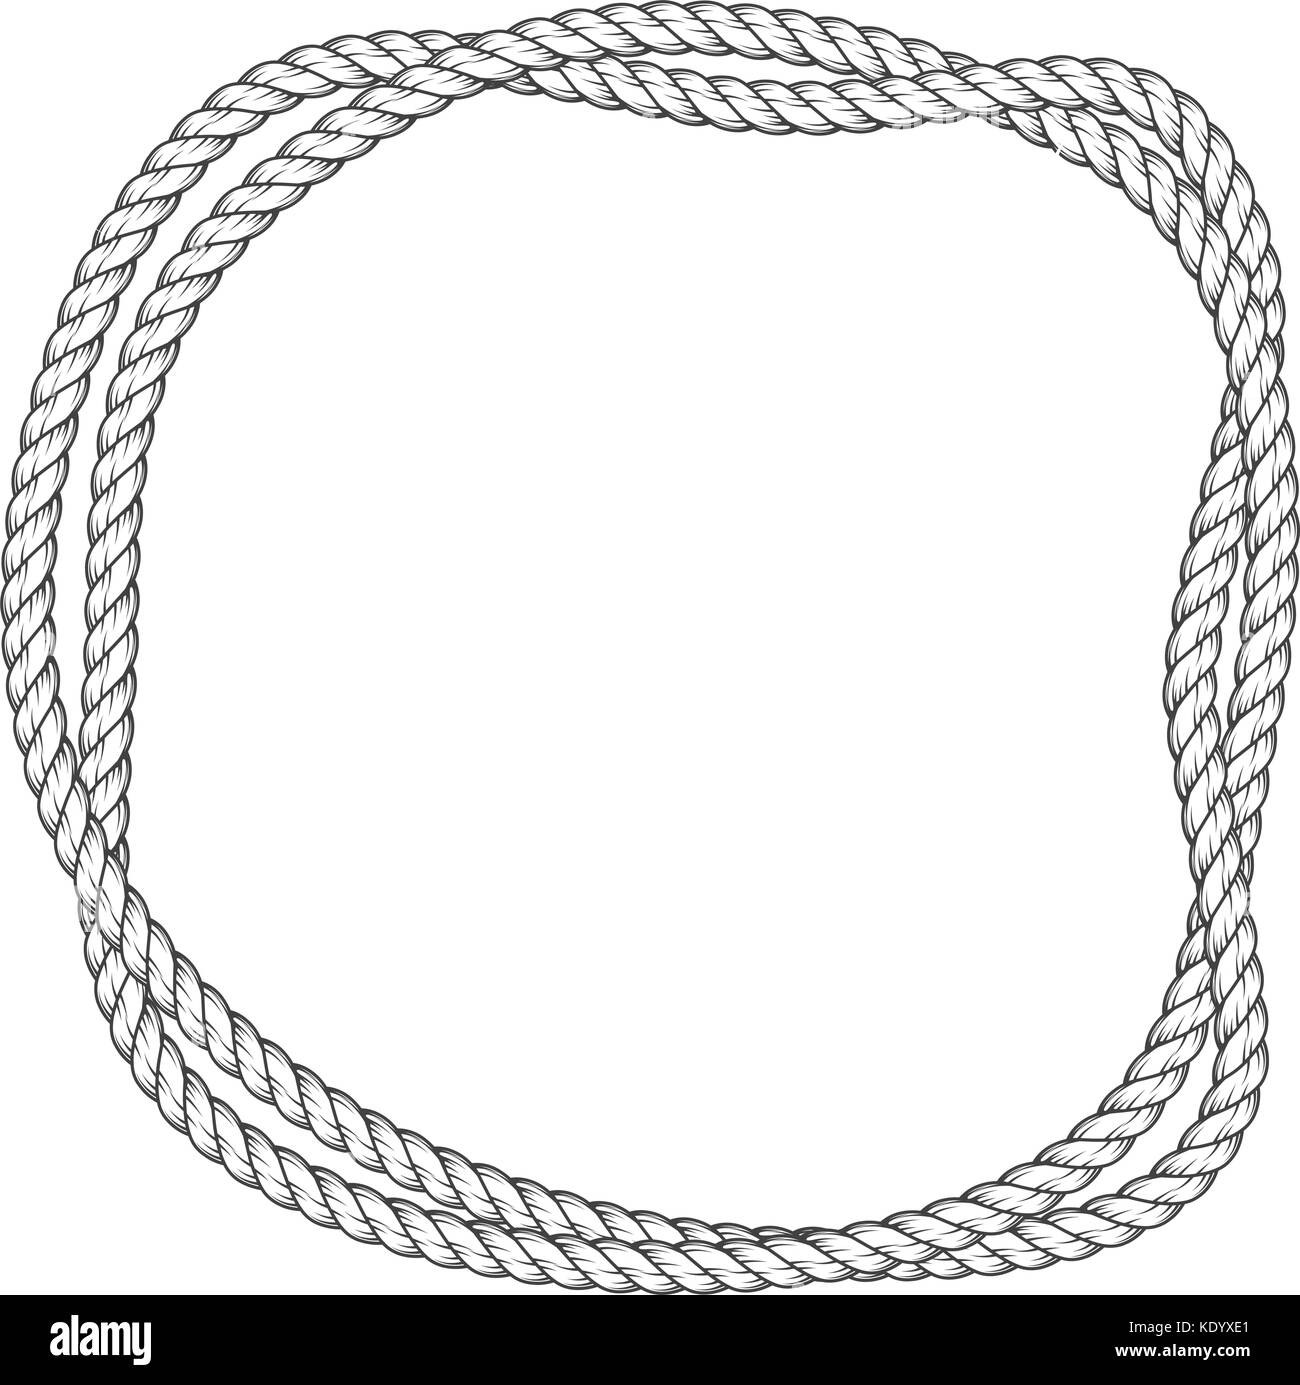 La corde tordue round frame - deux cordes entrelacées border Illustration de Vecteur